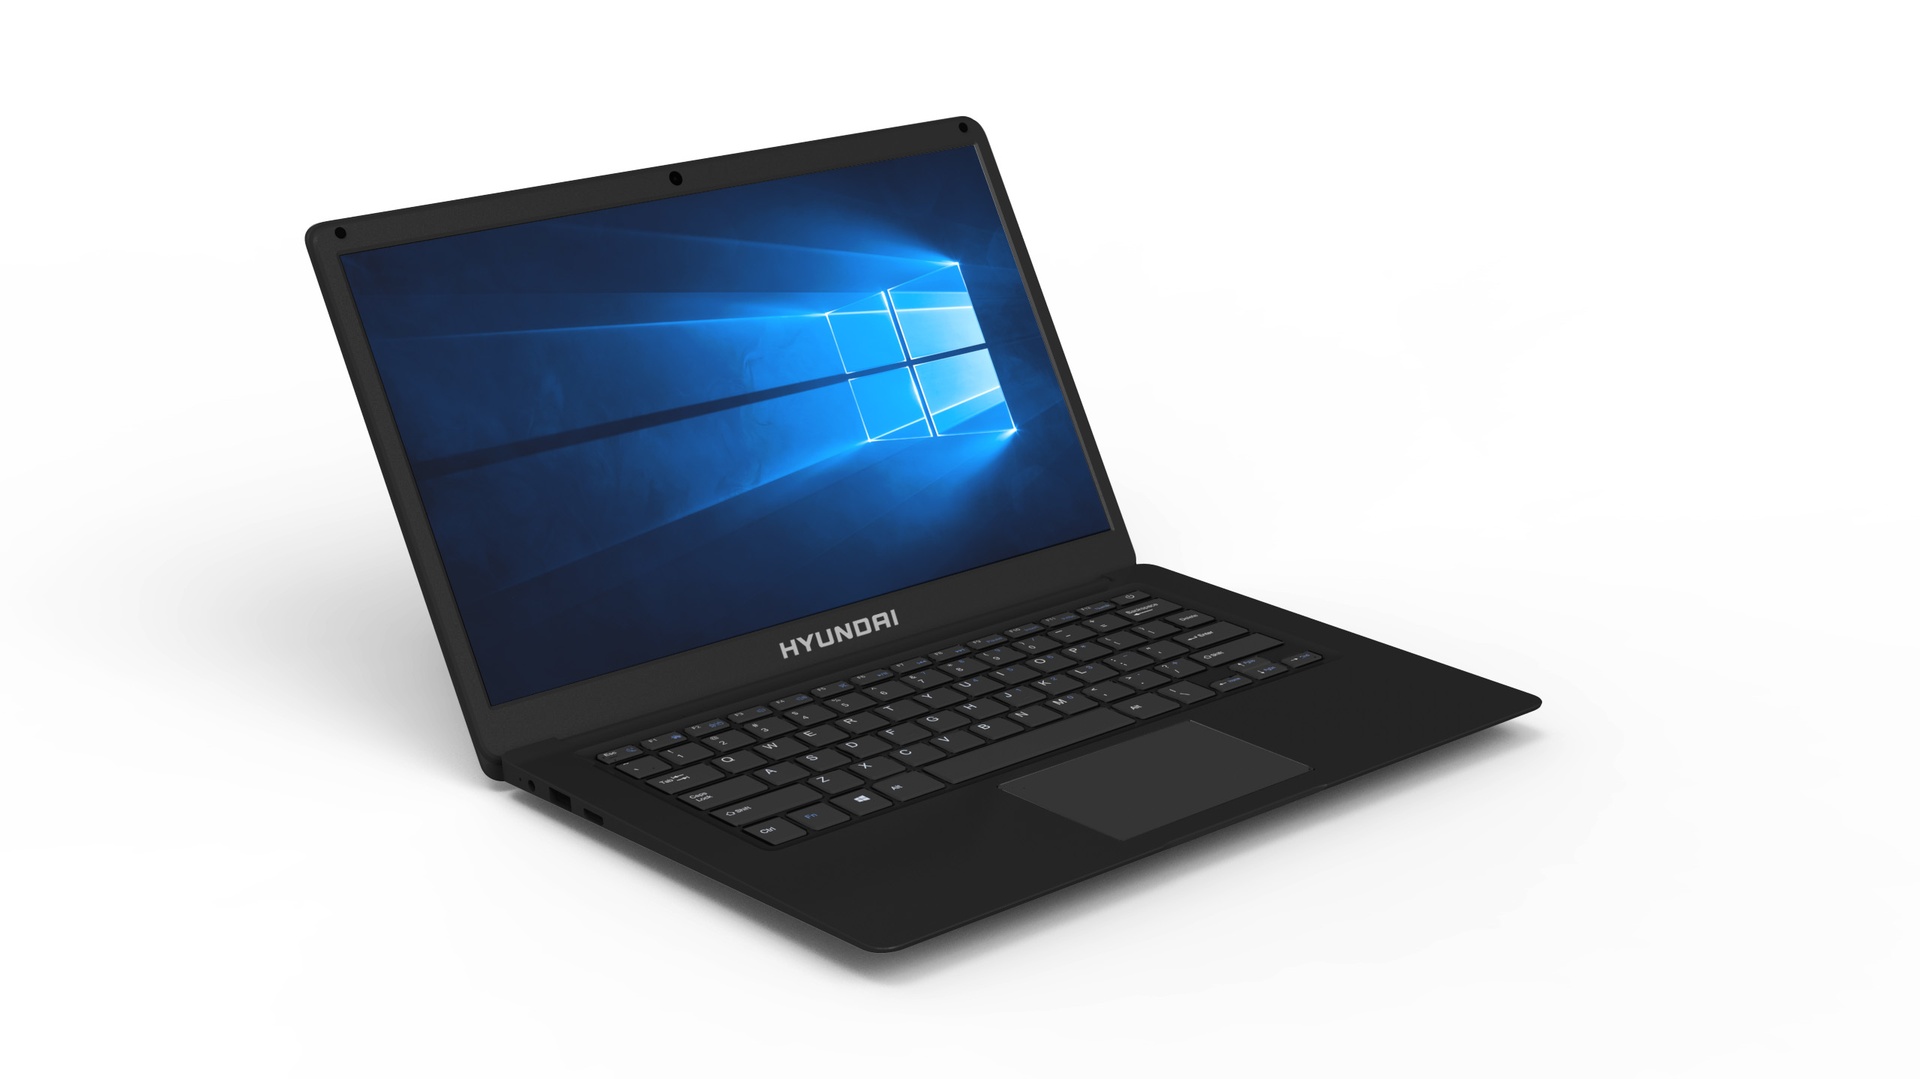 Hyundai Thinnote-A, 14.1" Celeron Laptop, 4GB RAM, 64GB Storage, Expandable  2.5" SATA HDD Slot, Windows 10 Home S Mode, English - Black - Grade B L14WB2BK_B/RFB UPC  - L14WB2BK_B/RFB